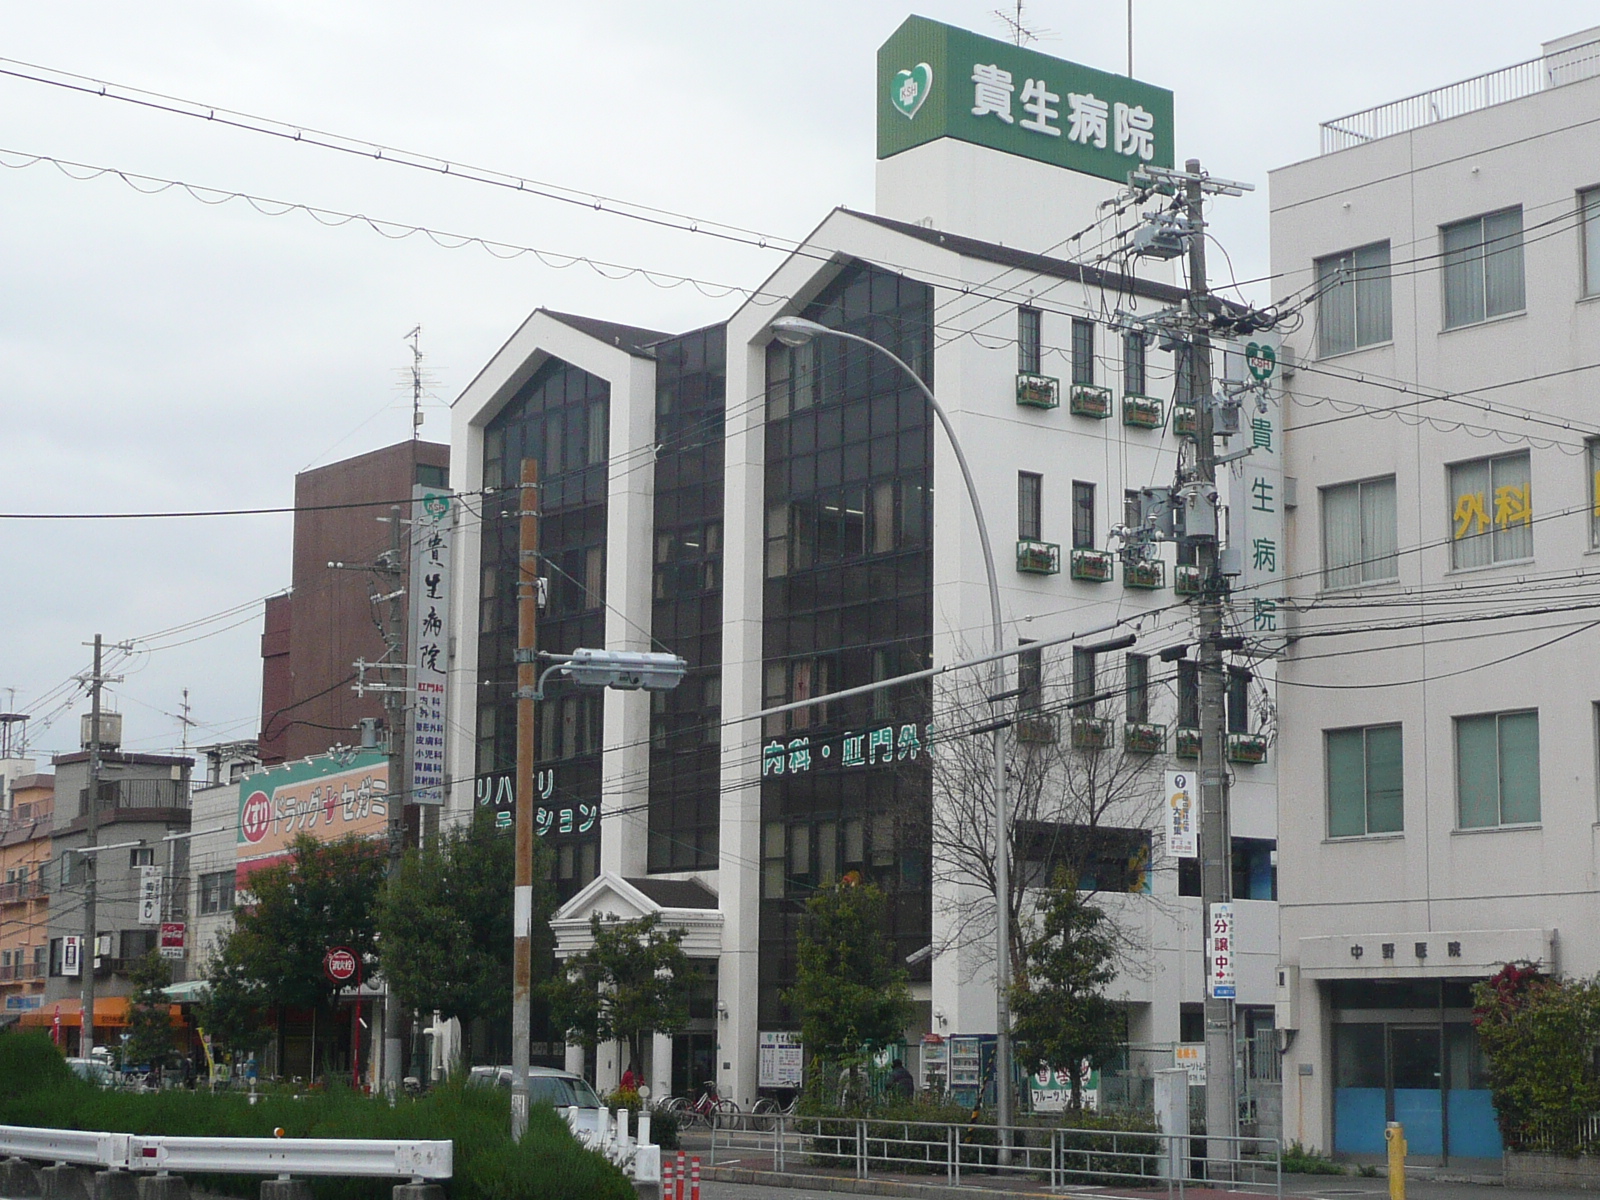 Hospital. Takao 350m to the hospital (hospital)